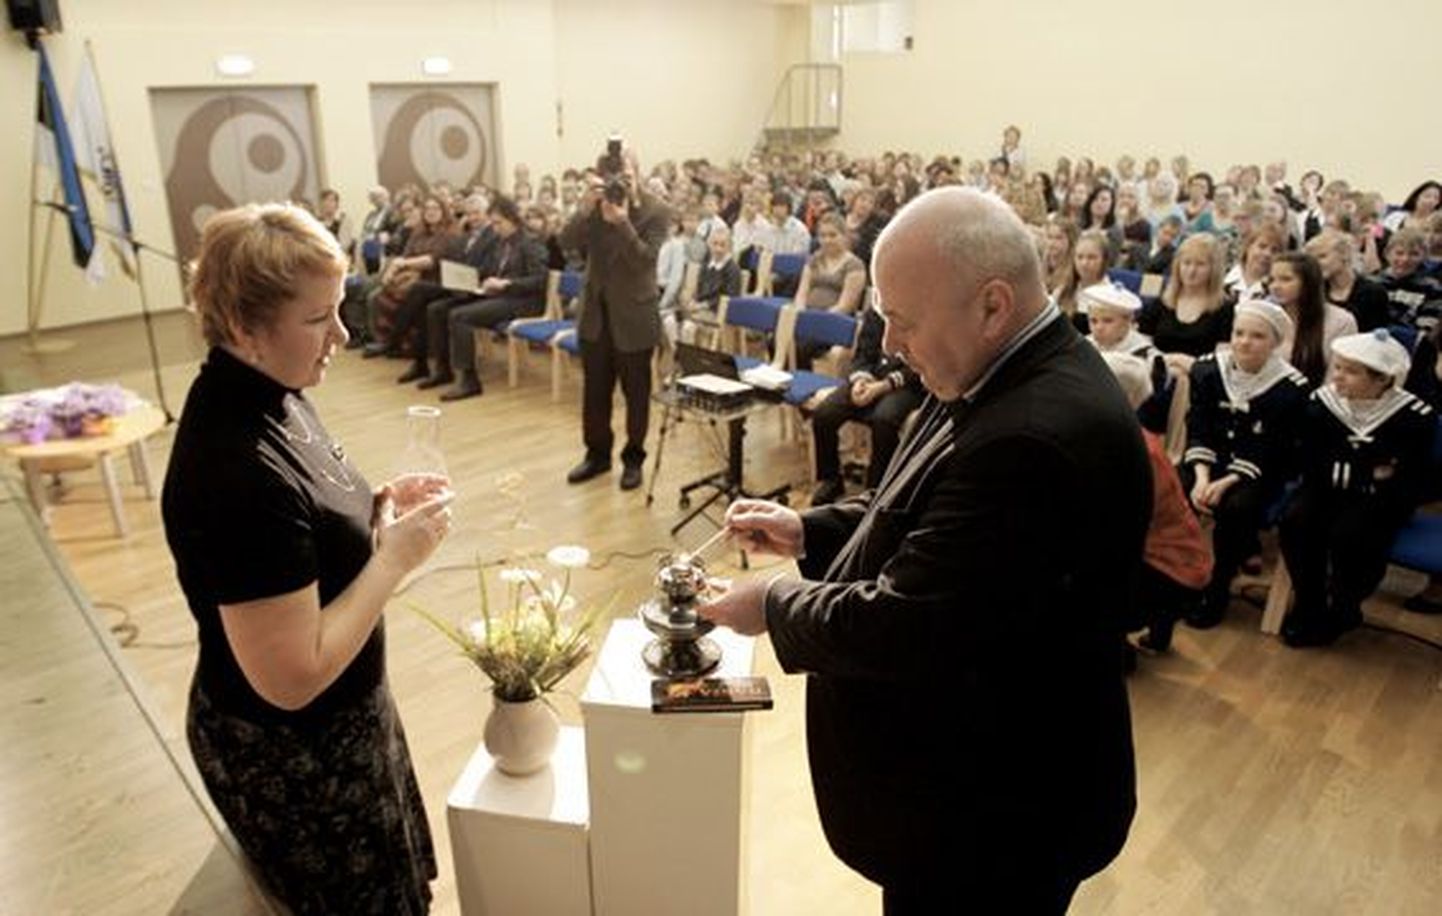 Sõmeru põhikooli direktor Virge Ong (vasakul) ja maavanem Einar Vallbaum süütasid ühiselt ürituse alguses lambi.